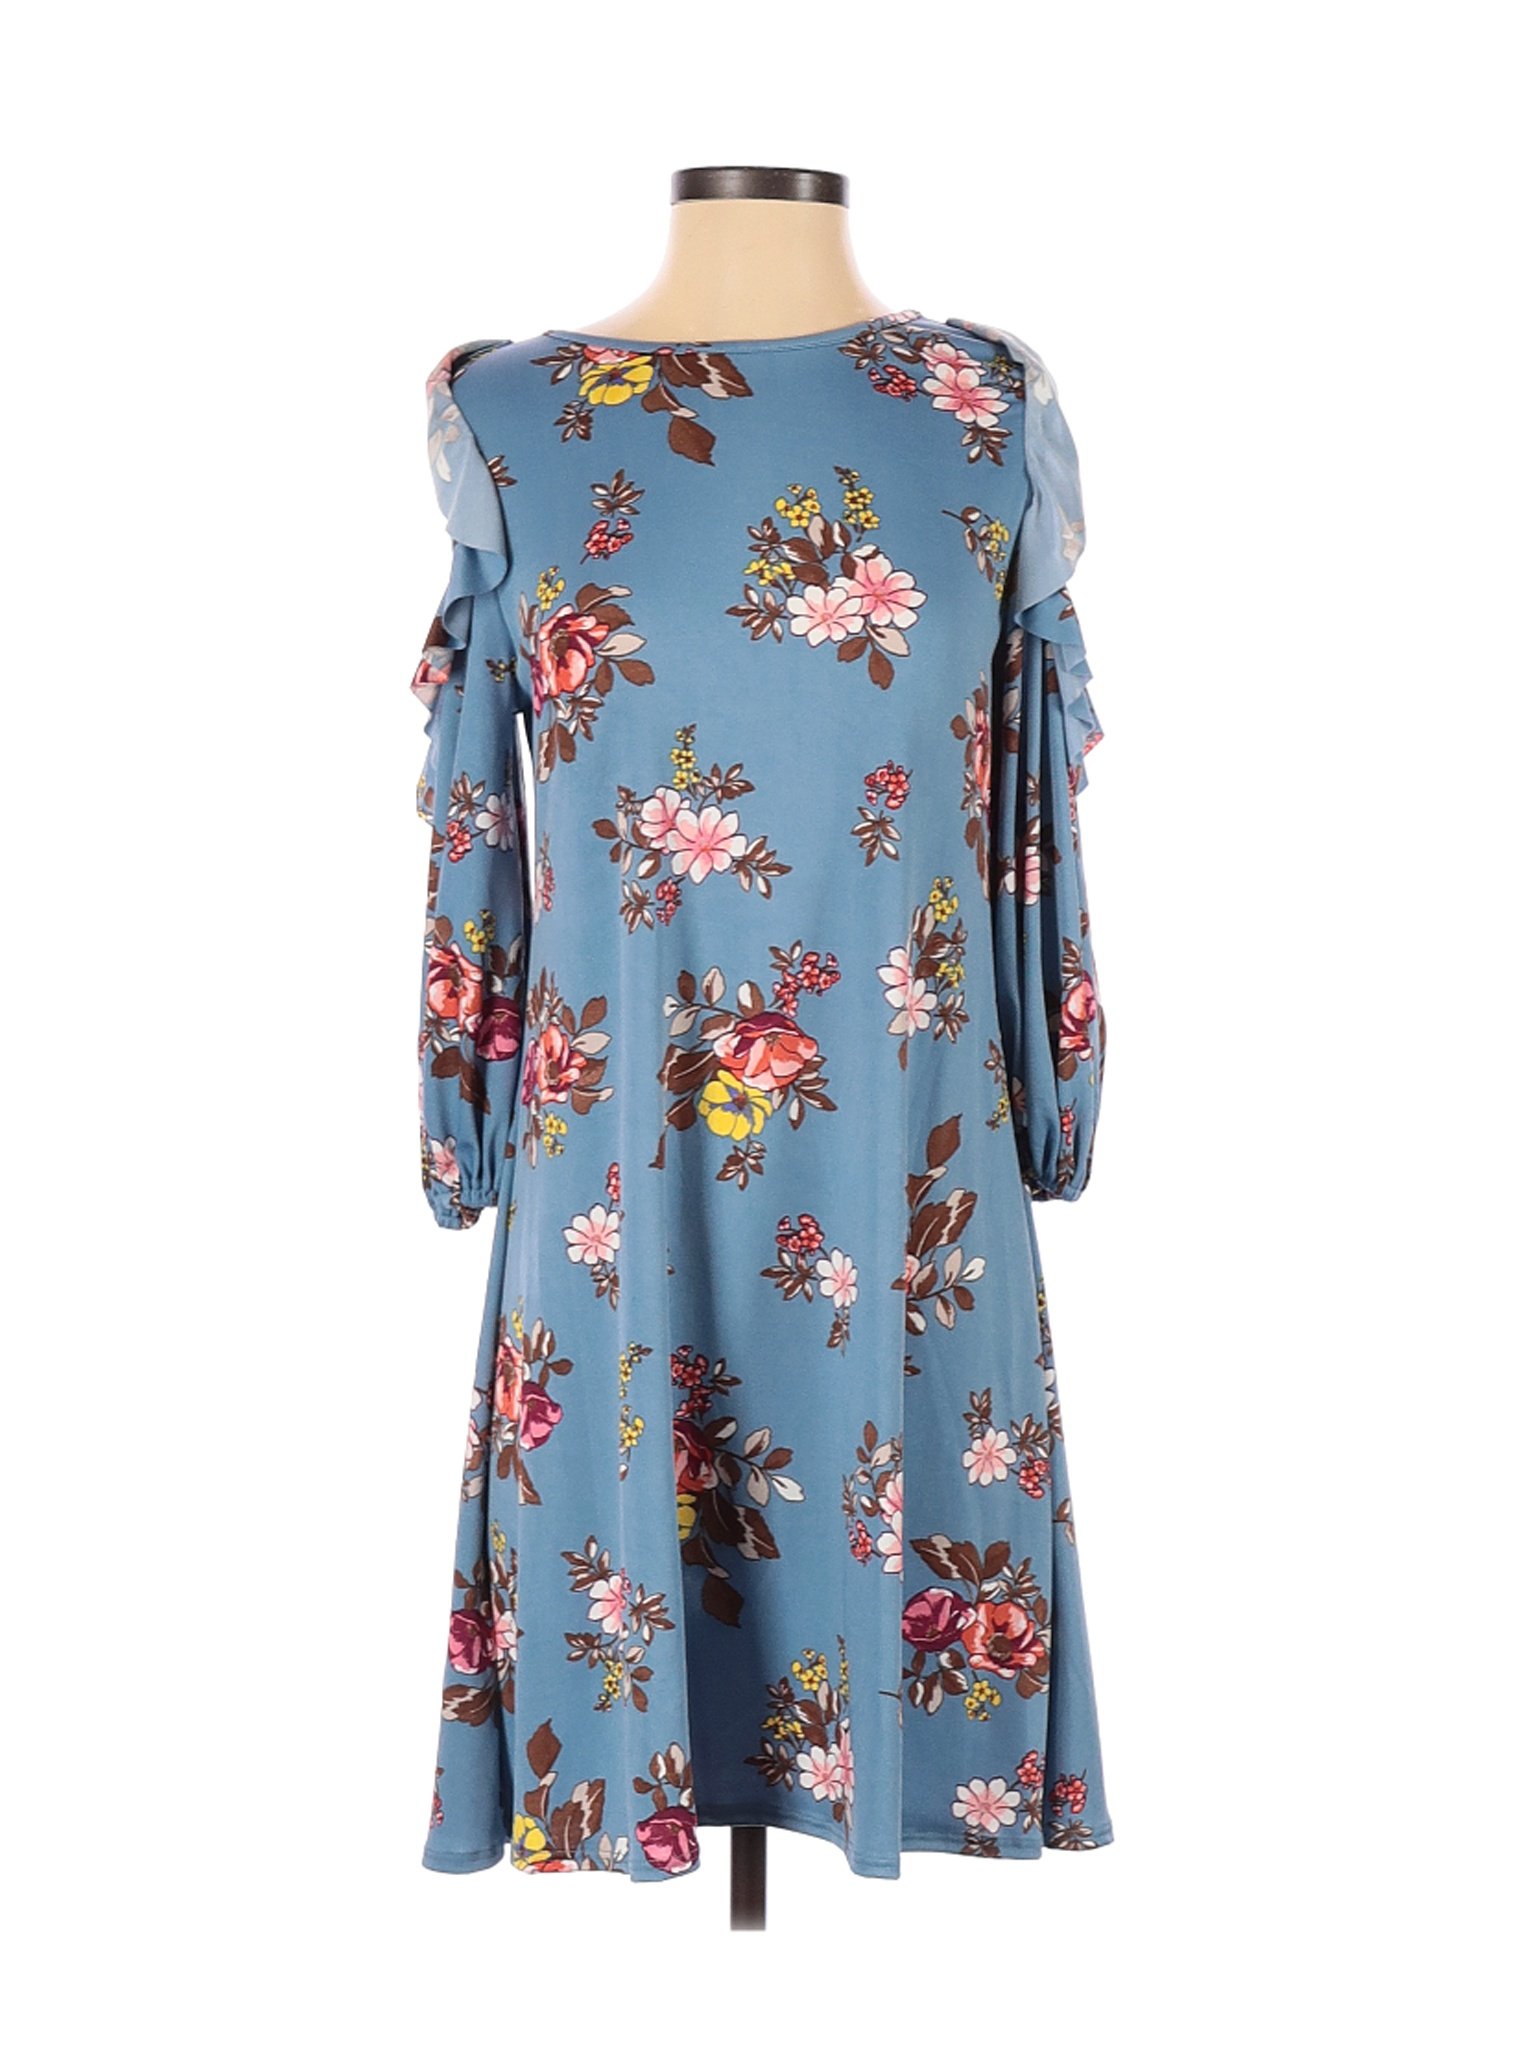 Assorted Brands Women Blue Casual Dress M | eBay